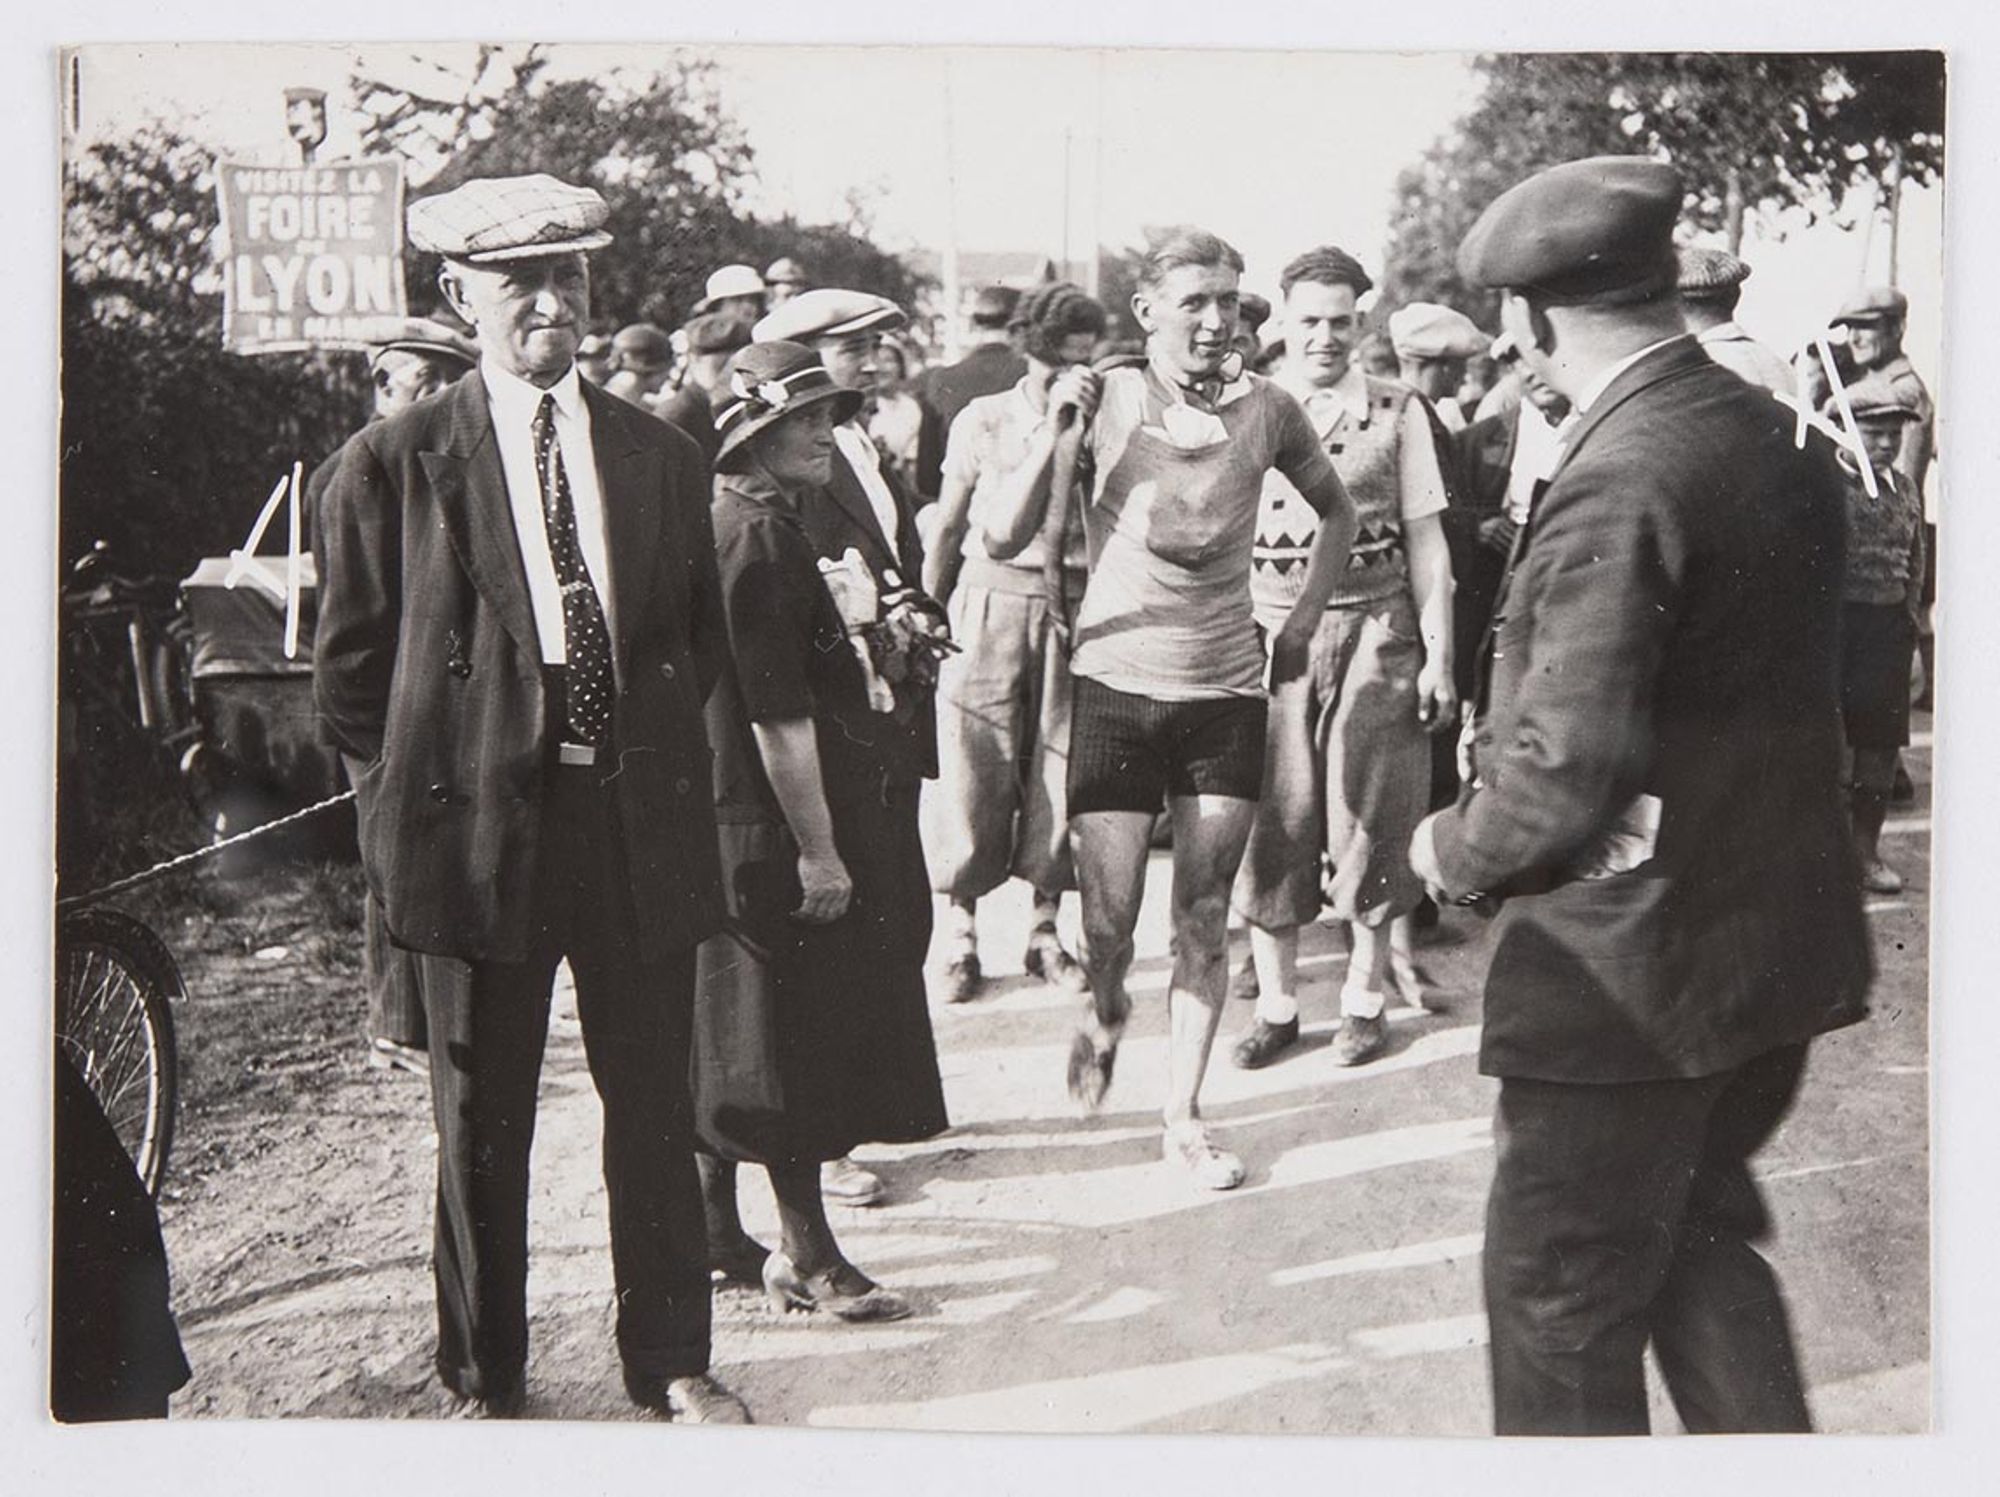 10 juin 1934. Prix de Saint-André. J. Krubs, vainqueur de la course, au milieu des spectateurs.